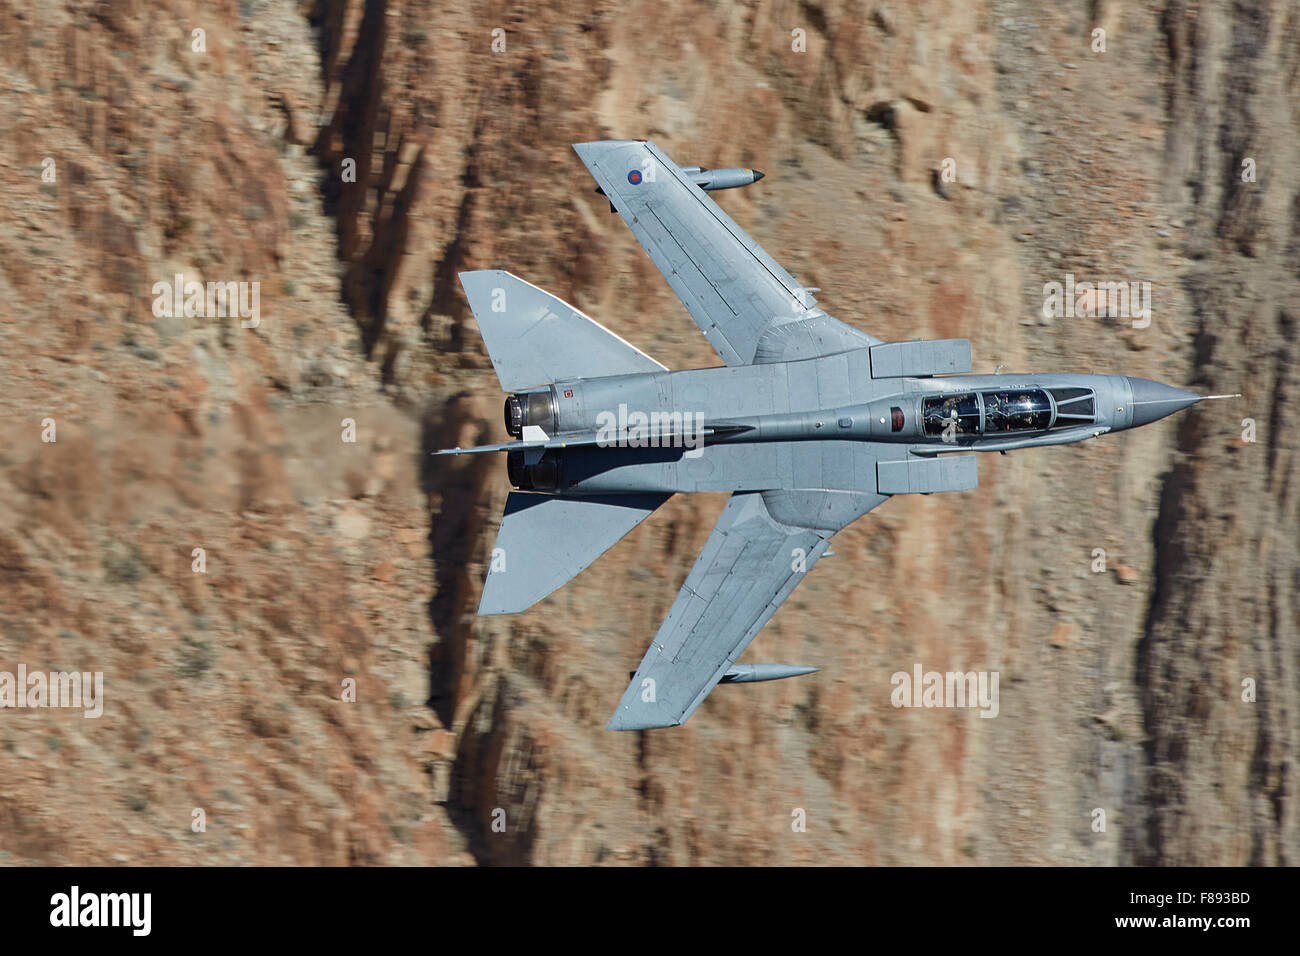 Immagine ravvicinata di un Royal Air Force Tornado GR4 jet fighter ruotando bruscamente attraverso una vallata desertica. Foto Stock